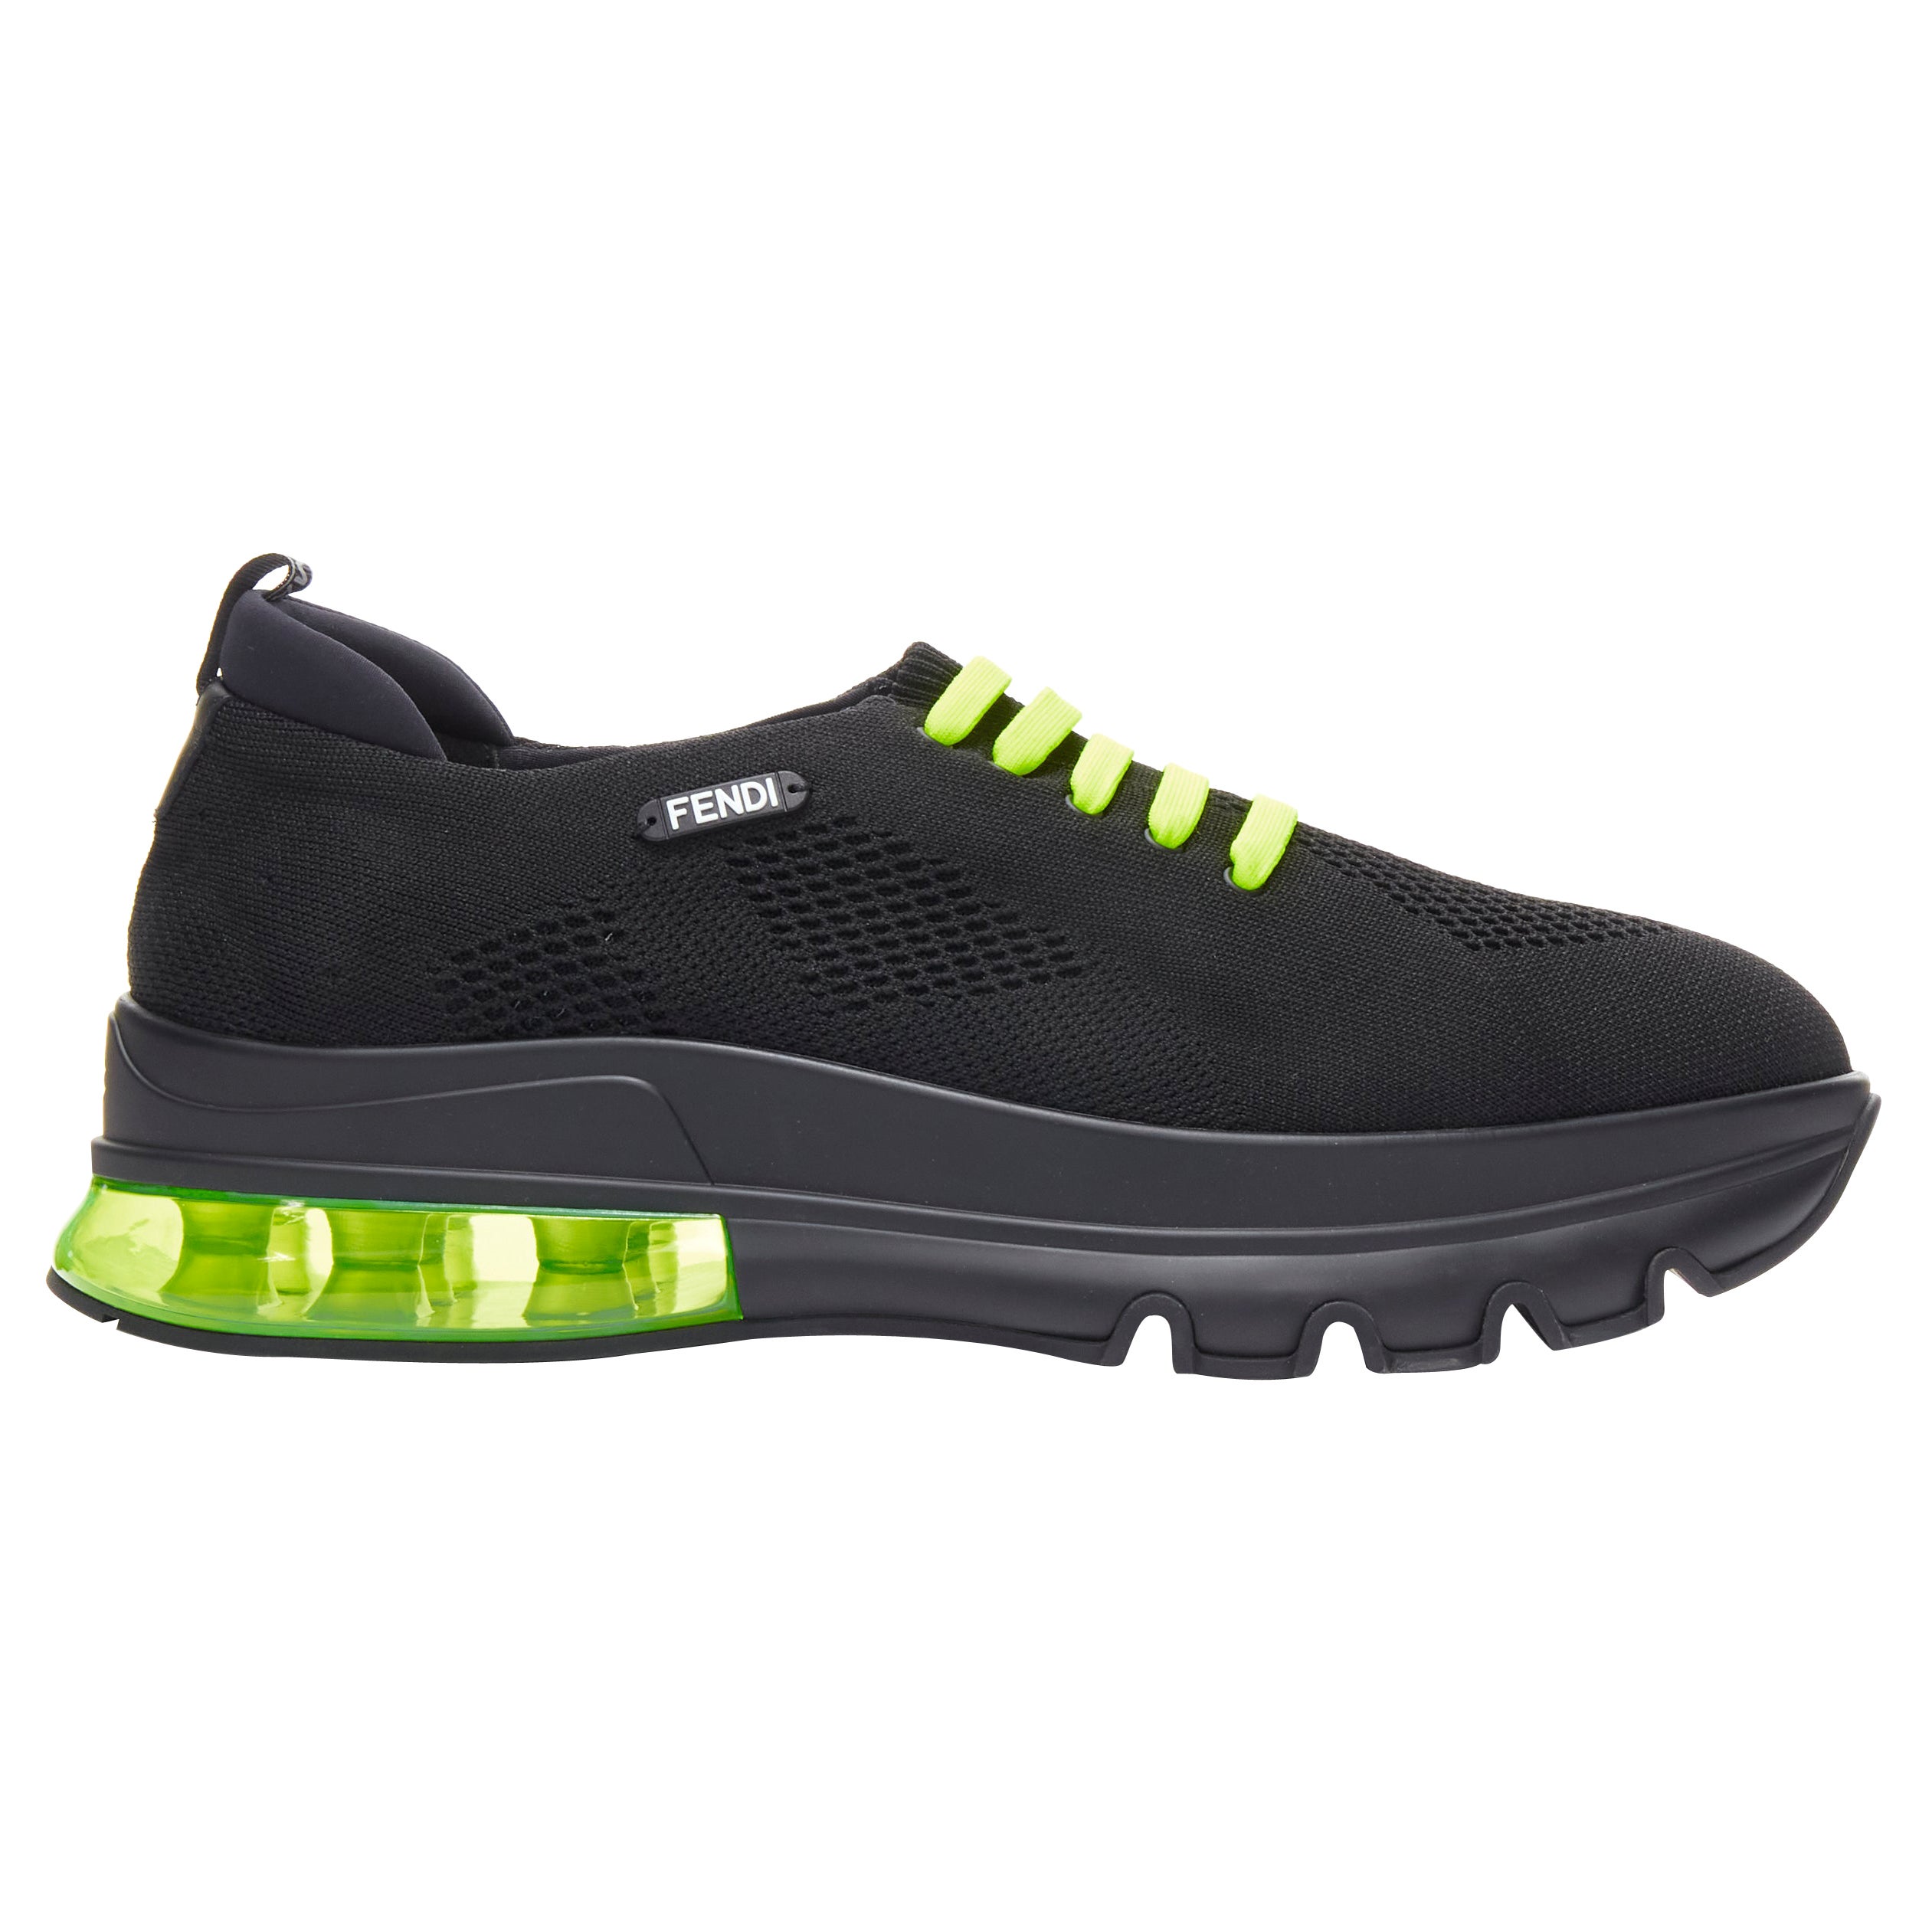 neu FENDI 2019 schwarz stricken neon gelb Luftsohle niedrigen Läufer Sneaker 7E1234 EU44 im Angebot